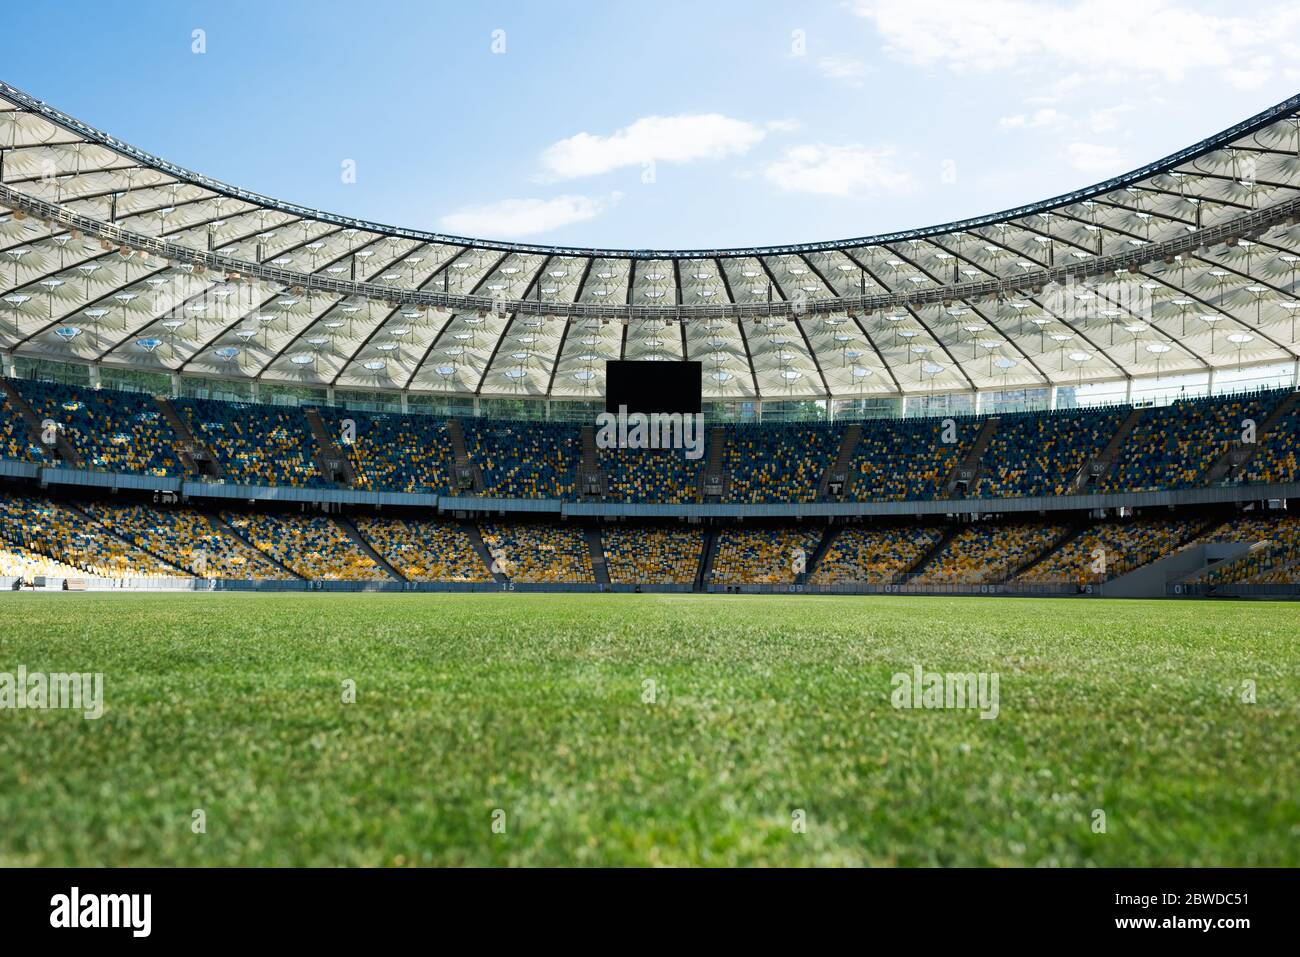 Rasenfußballplatz im Stadion bei sonnigem Tag mit blauem Himmel Stockfoto